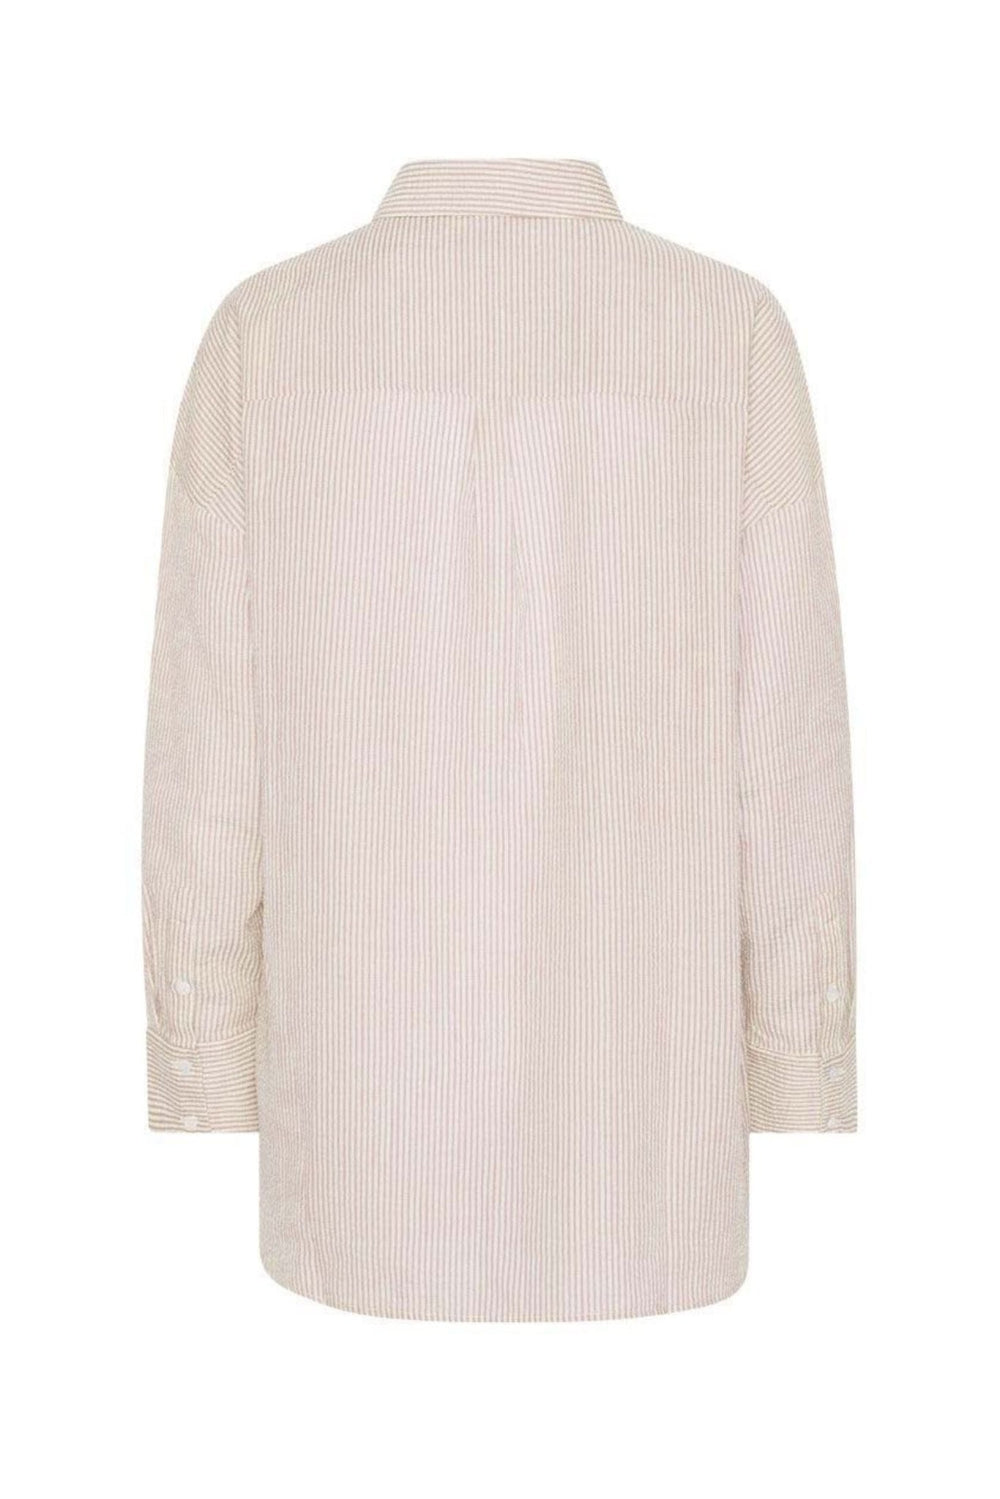 Sonja Shirt Sand/White | Skjorter og bluser | Smuk - Dameklær på nett